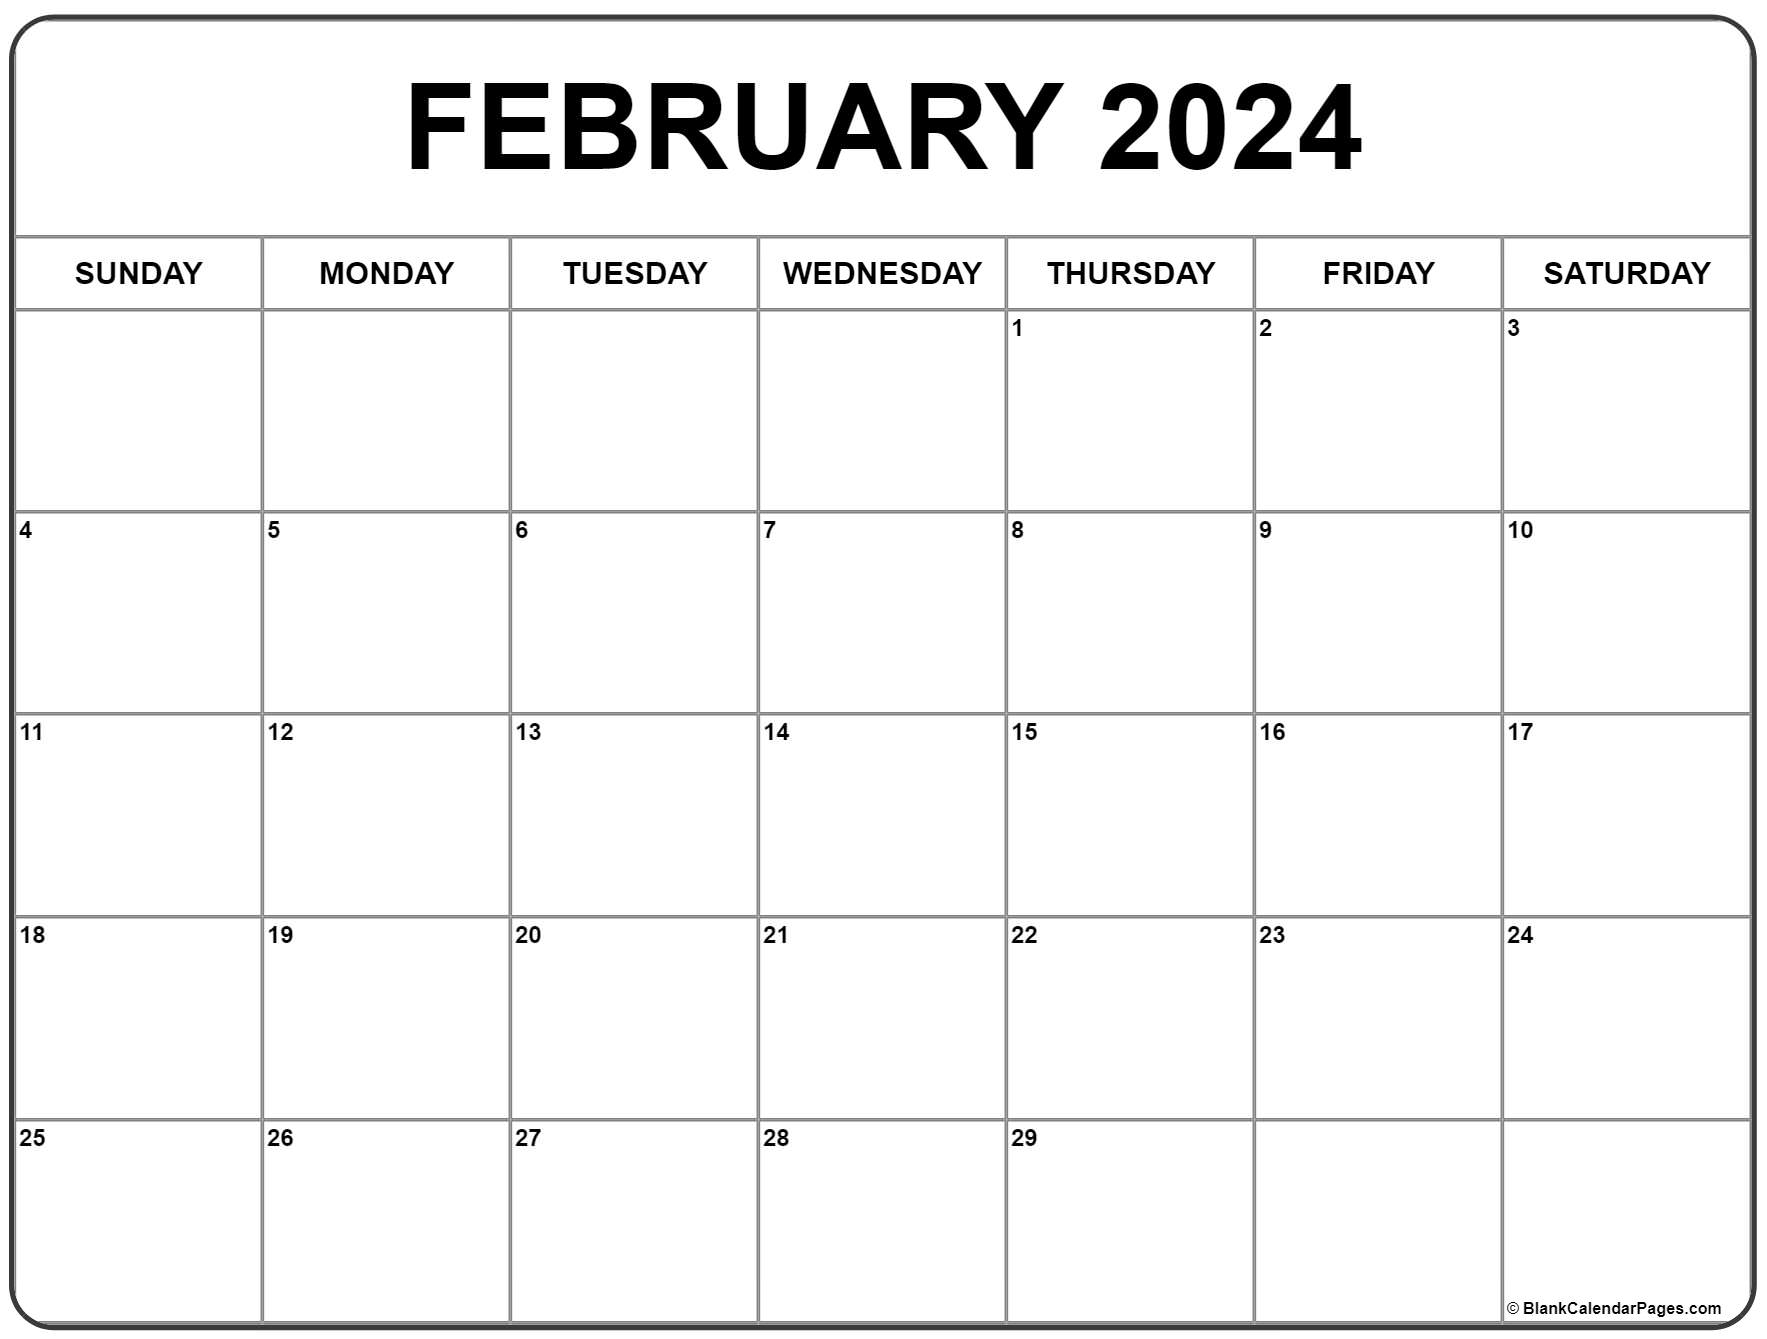 February 2024 Calendar | Free Printable Calendar for Calendar 2024 February Printable Free